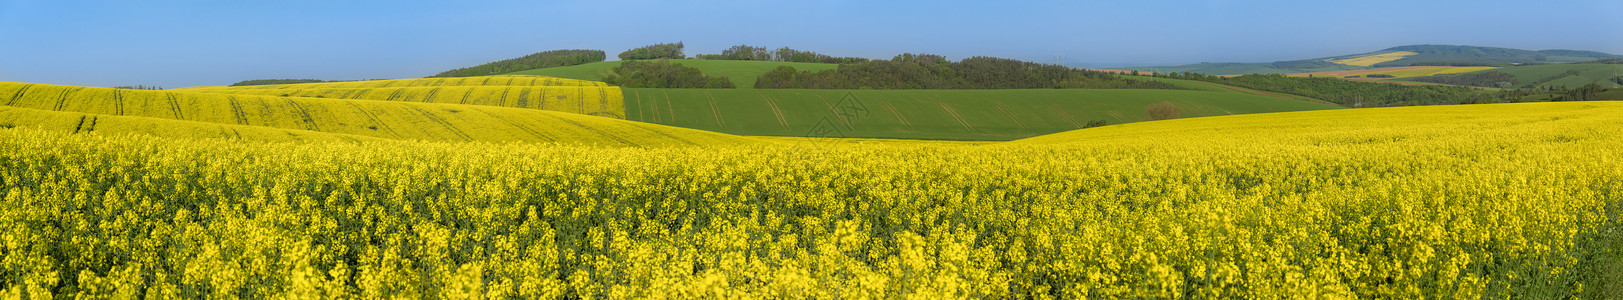 以黄色和绿的山丘为主全景黄种籽文化与绿色山丘的风景背景图片